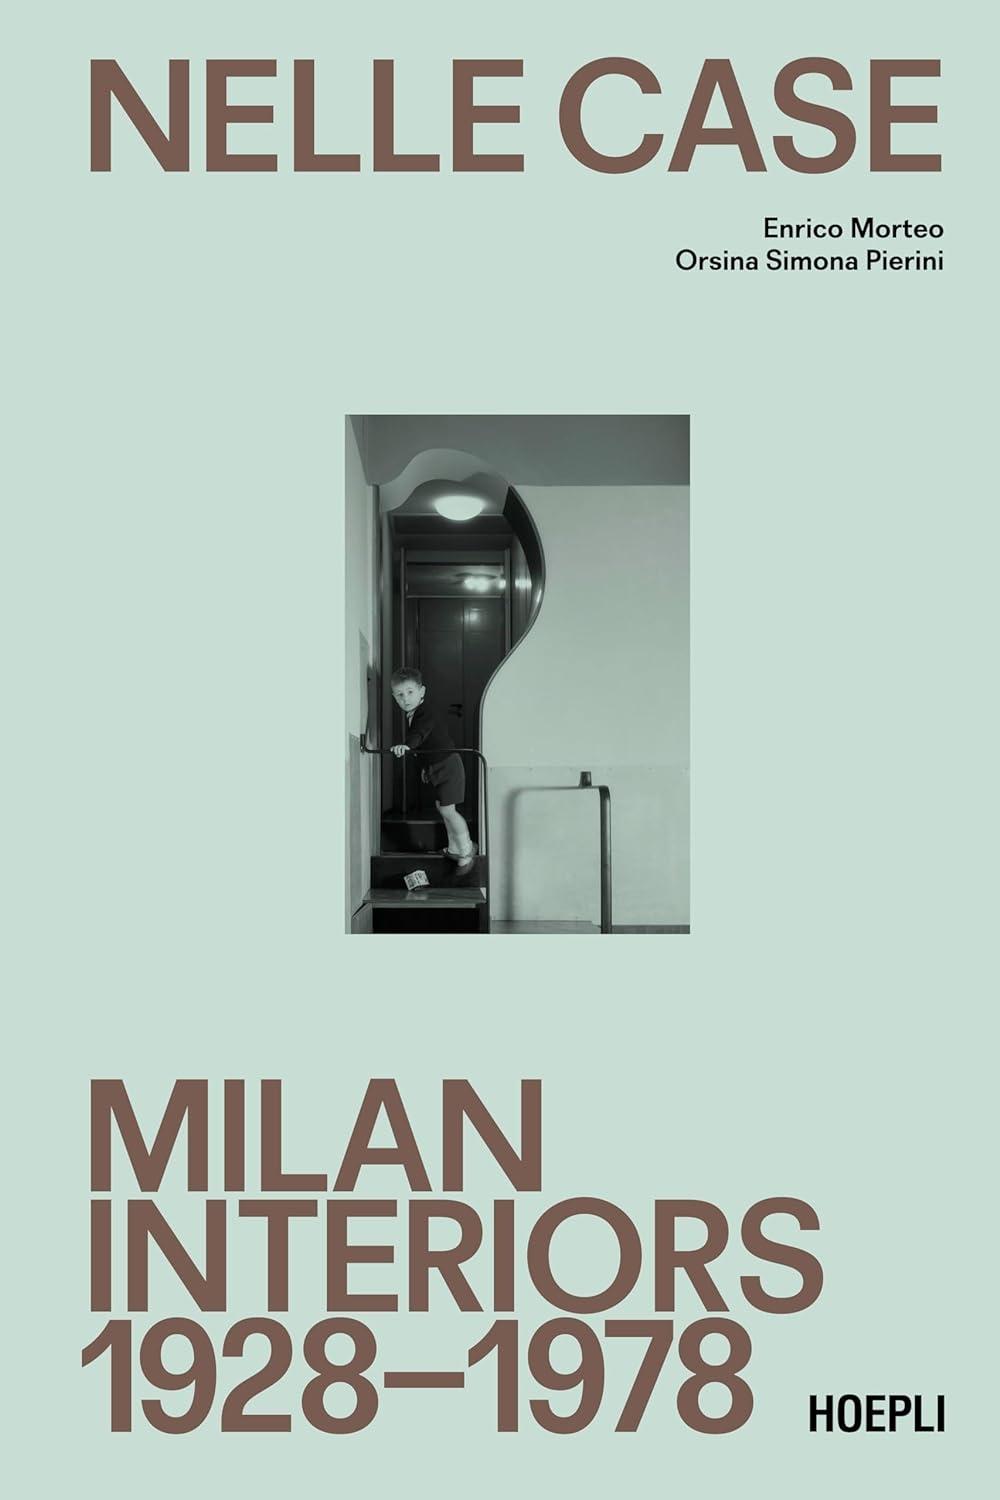 NELLE CASE. MILAN INTERIORS 1928-1978 "STORIA E SAGGI ARCHITETTURA"